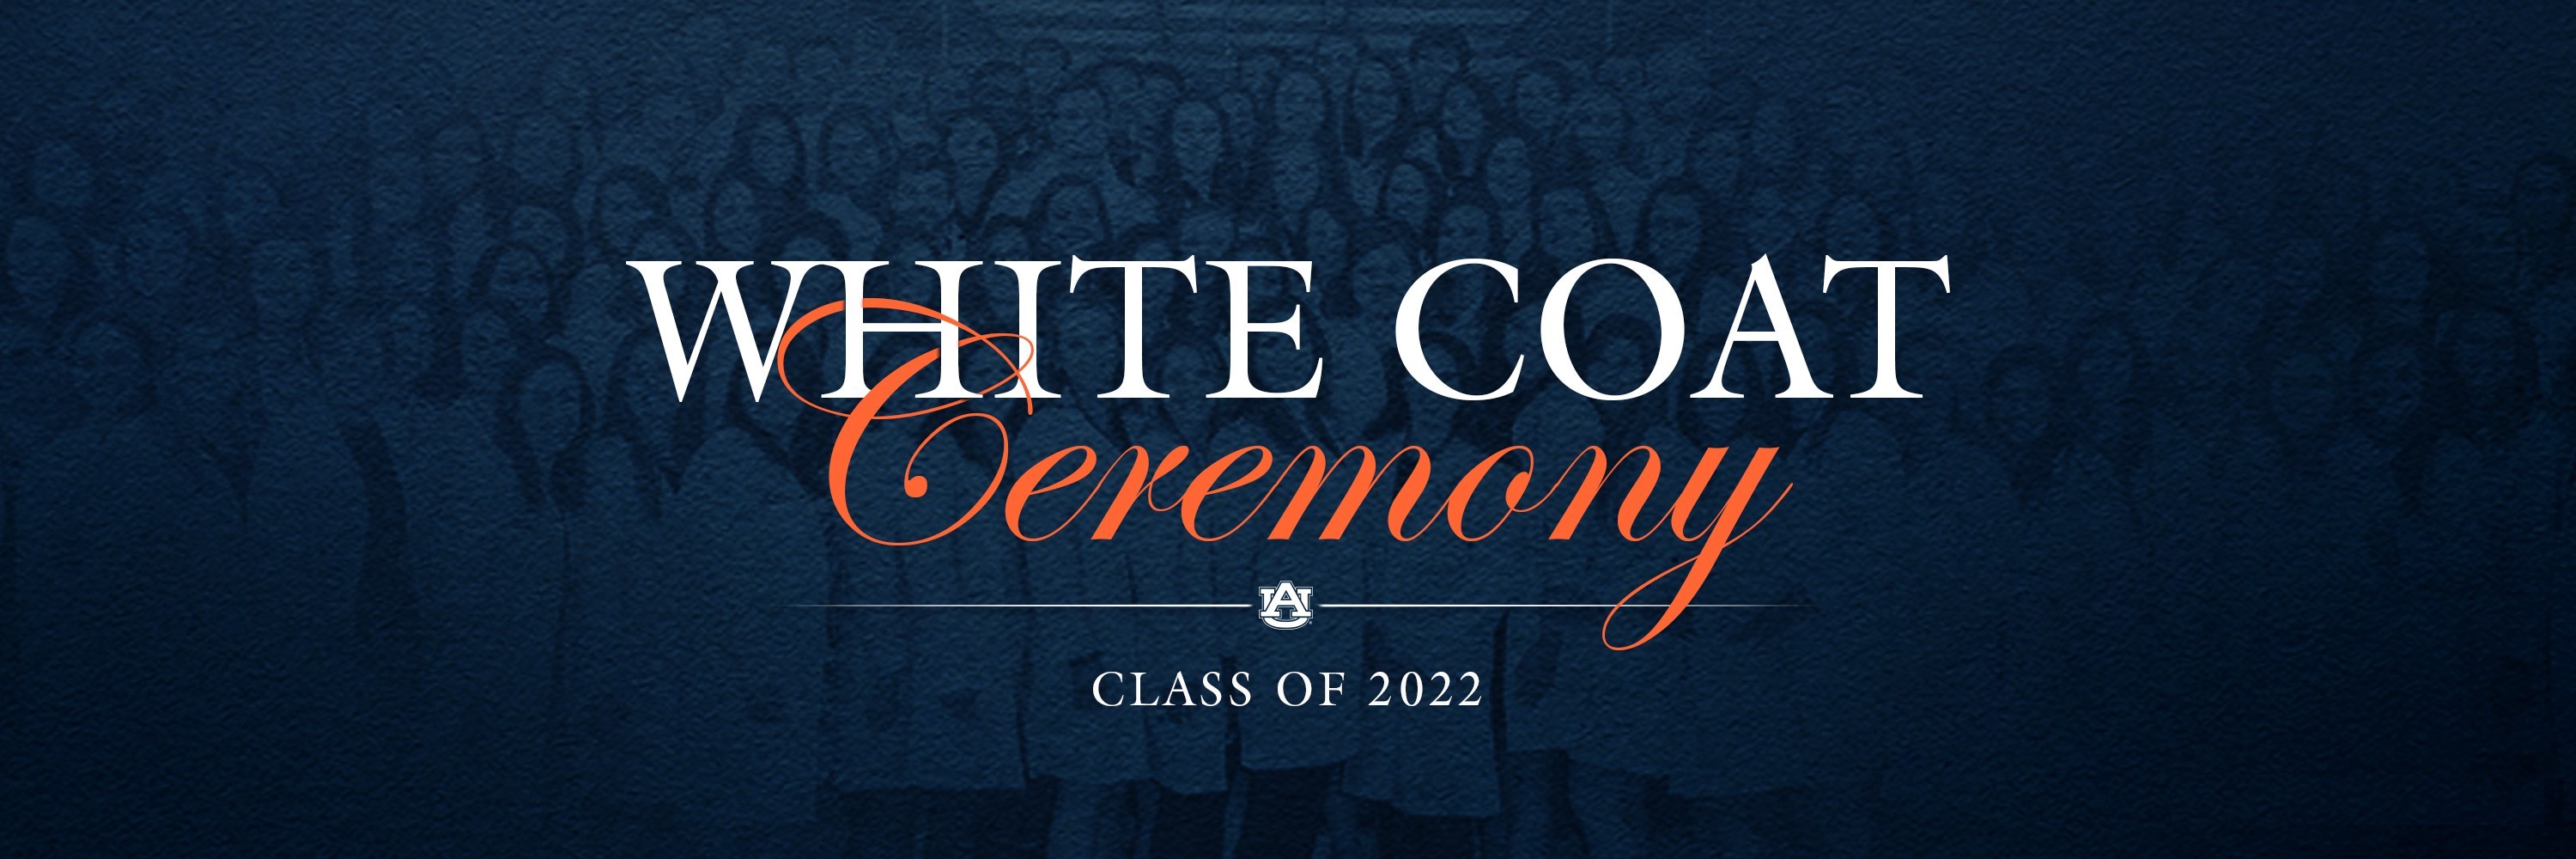 White Coat Ceremony Class of 2022